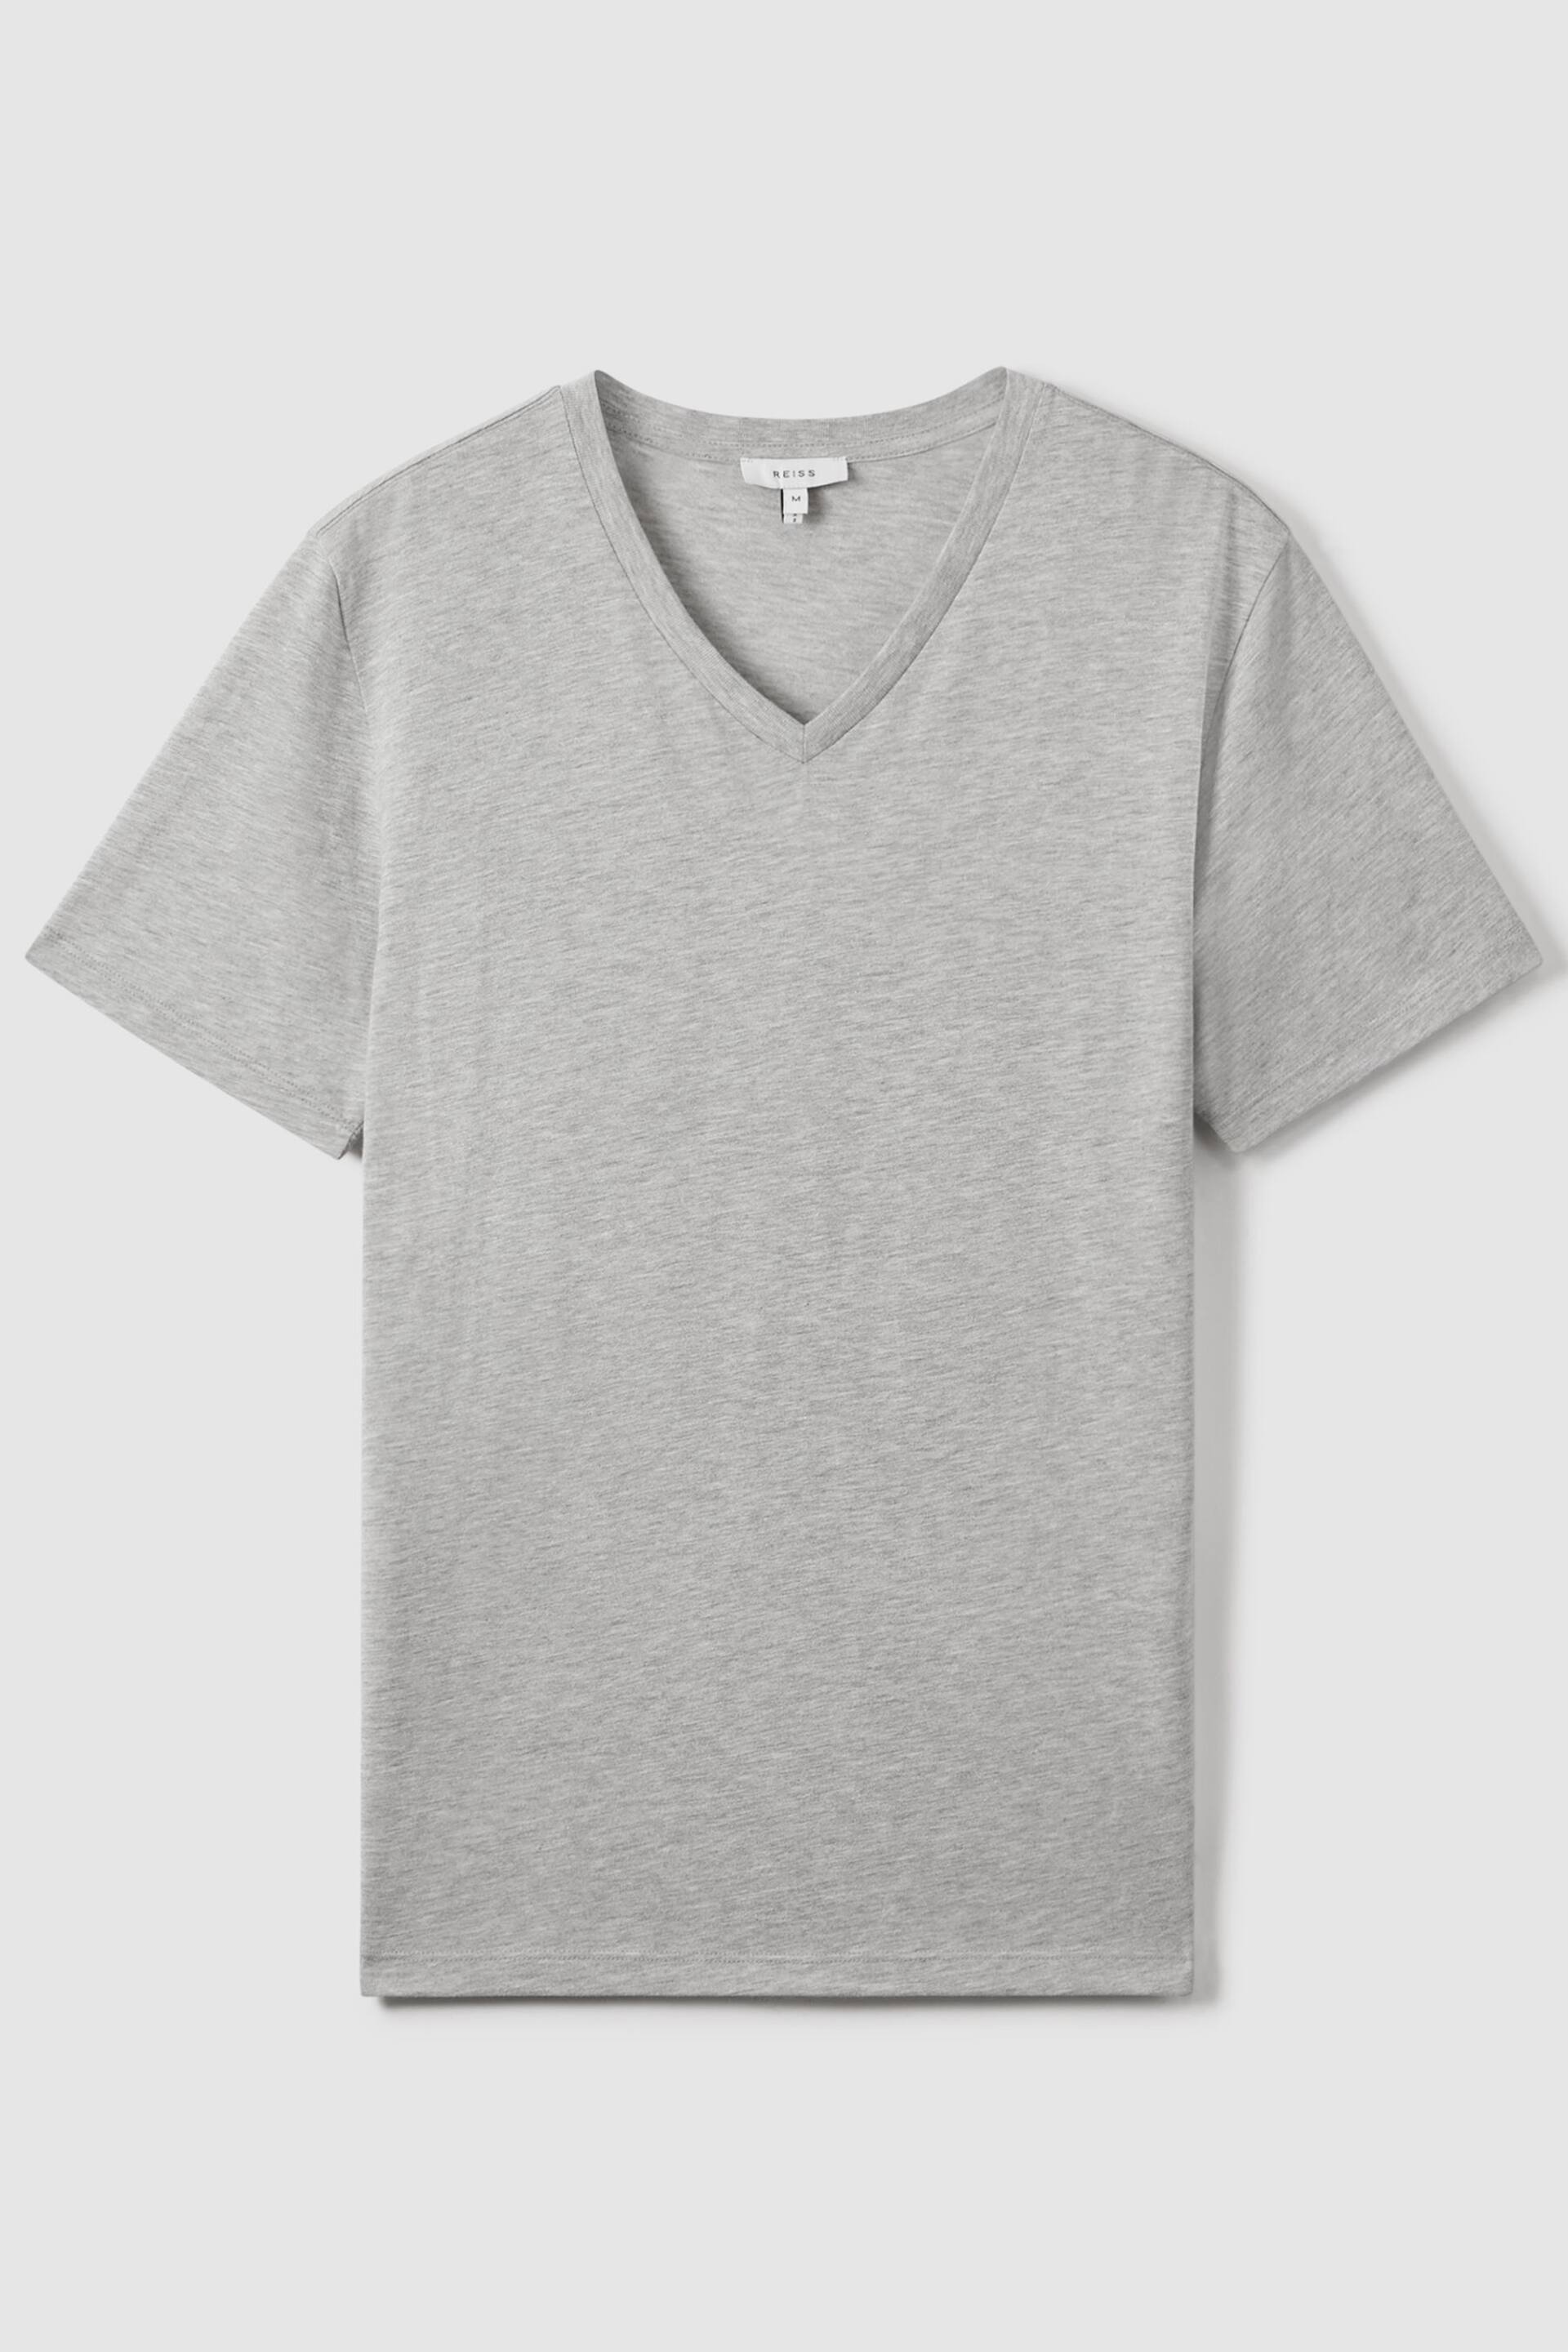 Reiss Grey Marl Dayton Cotton V-Neck T-Shirt - Image 2 of 7